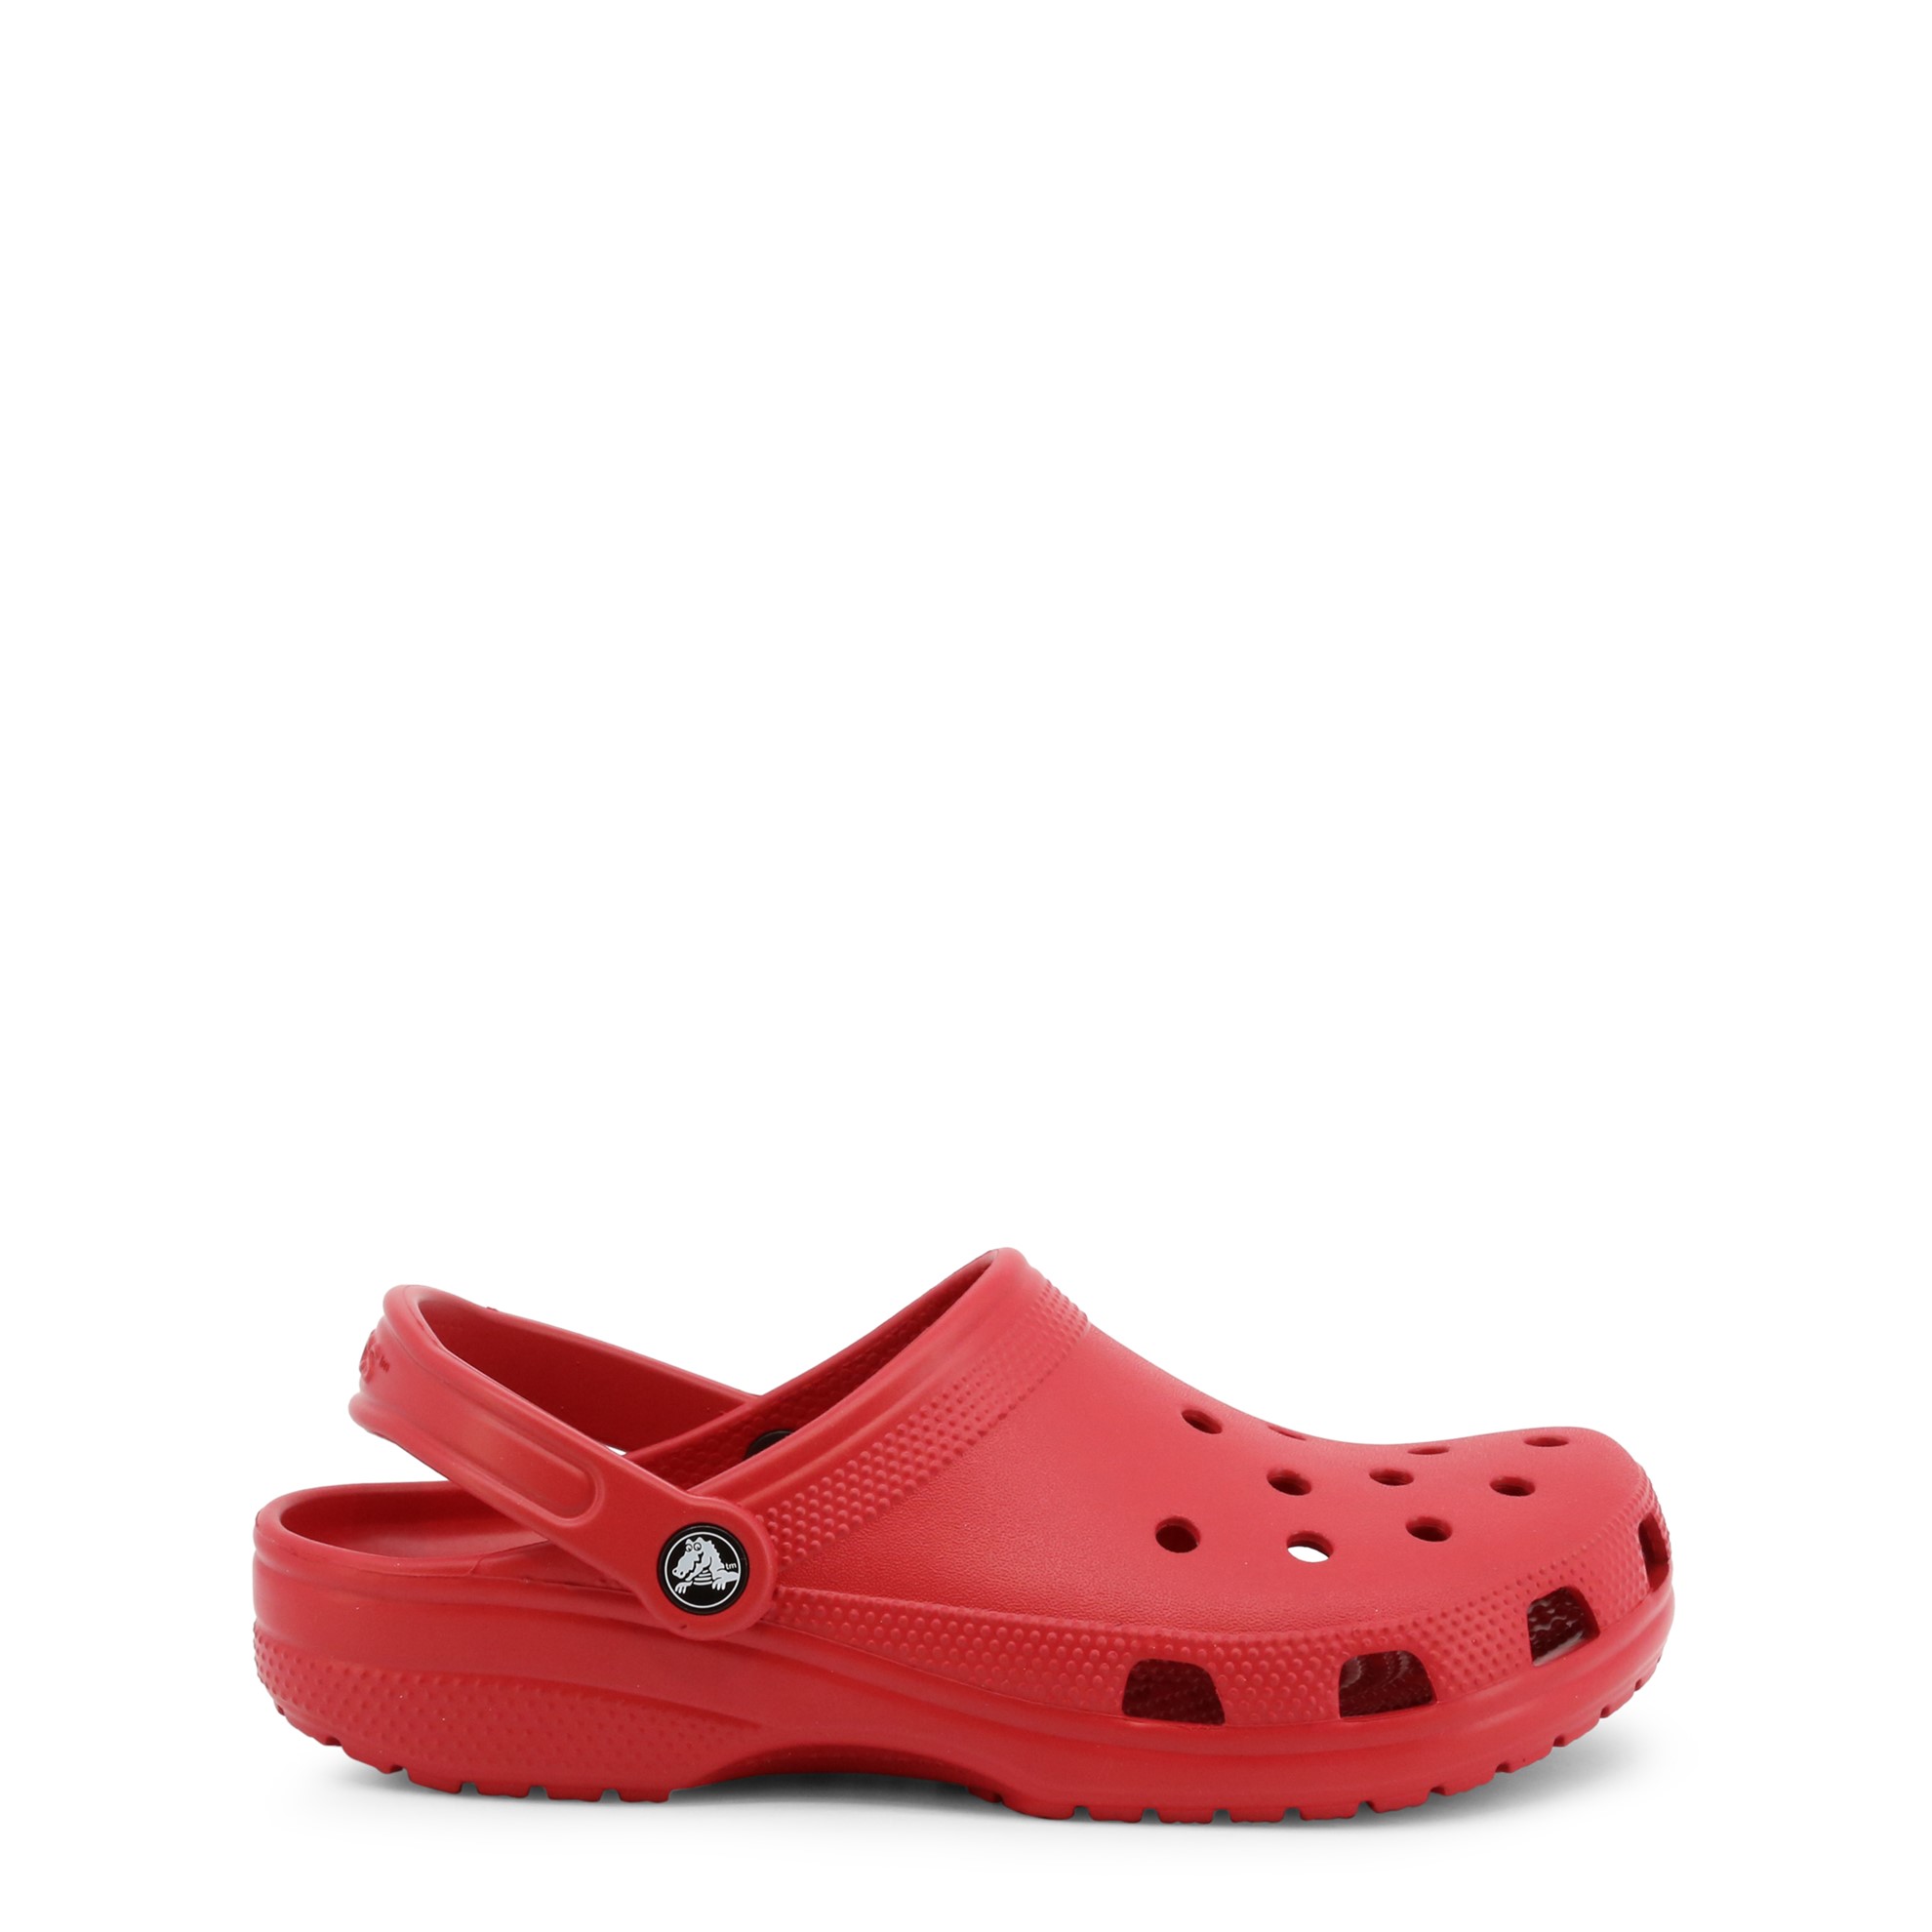 Crocs Unisex Shoes 10001 Red